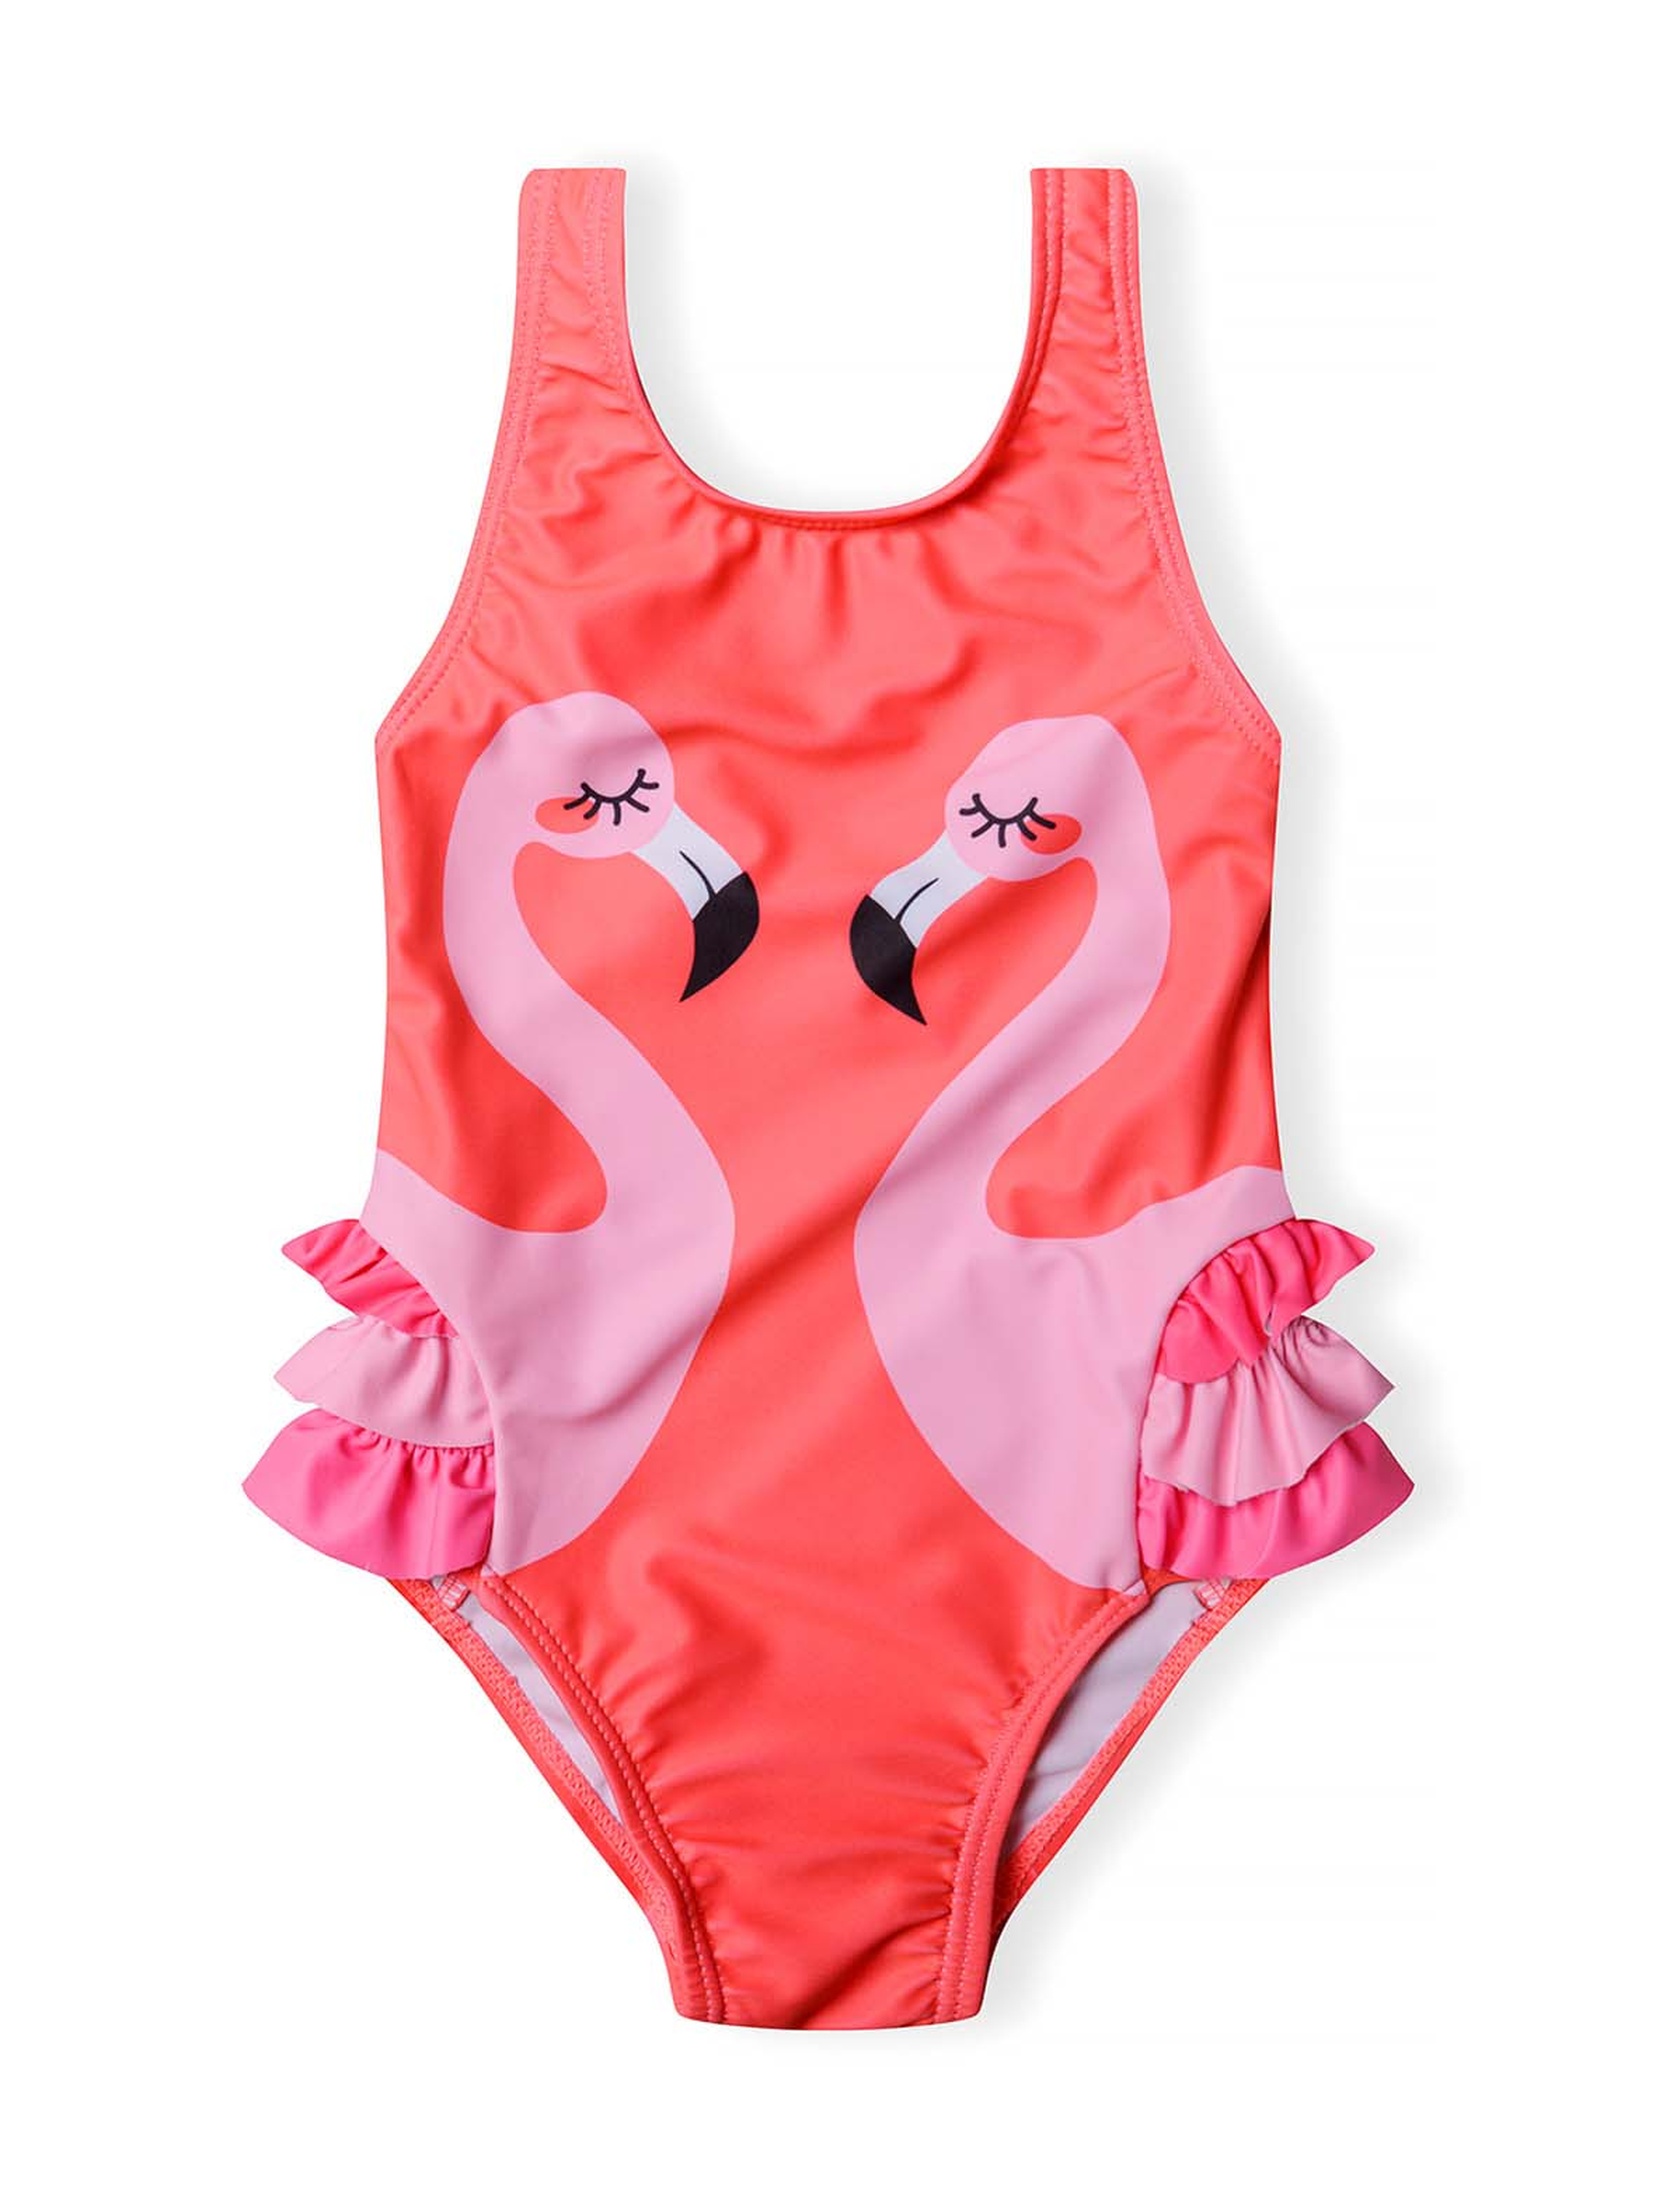 Jednoczęściowy kostium kąpielowy z falbankami i flamingami